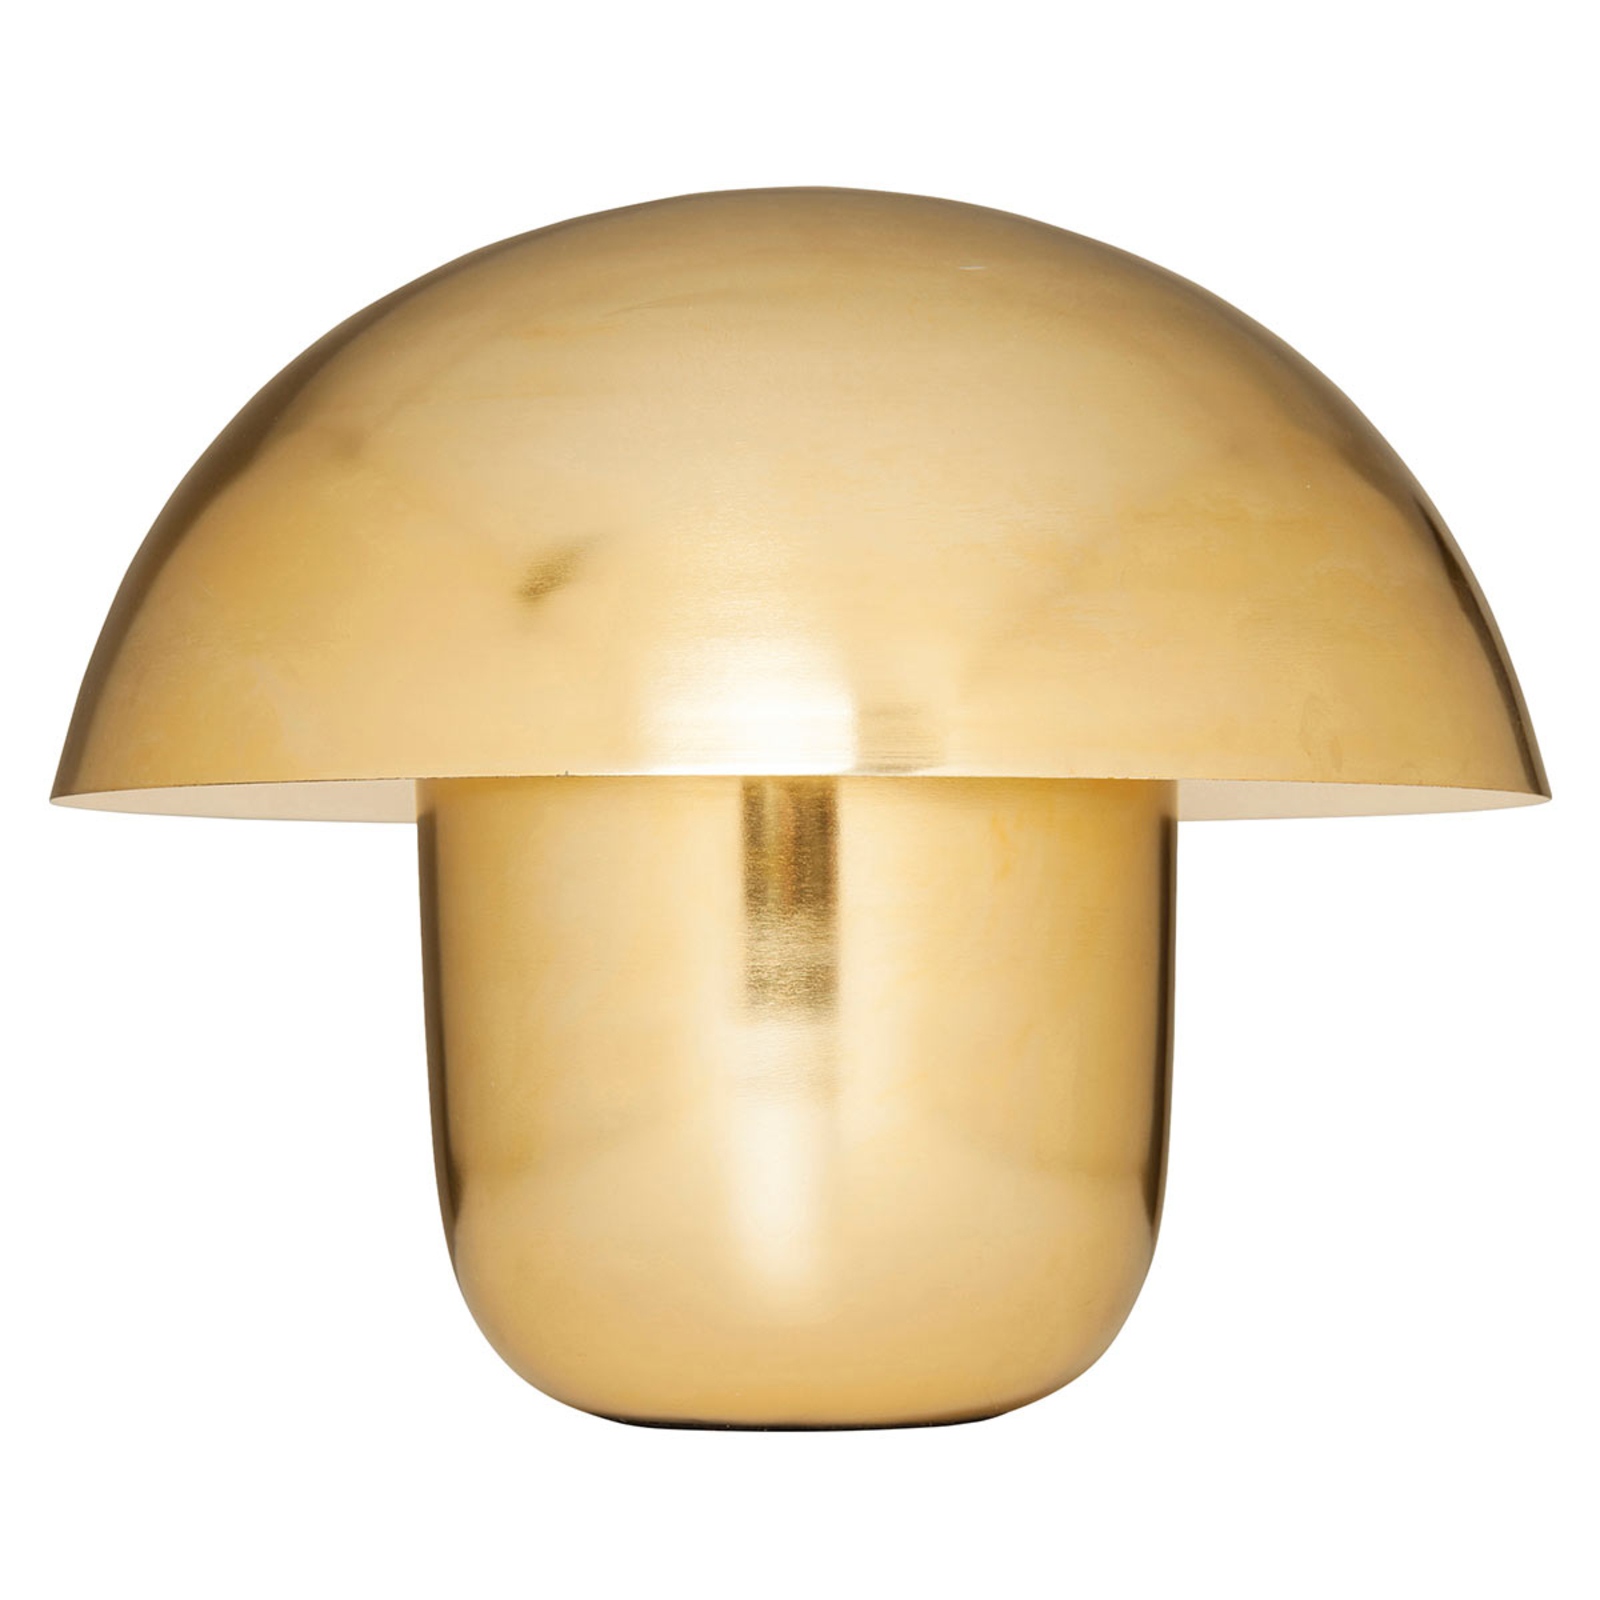 KAREN Mushroom - tafellamp in de vorm van een paddestoel, goud